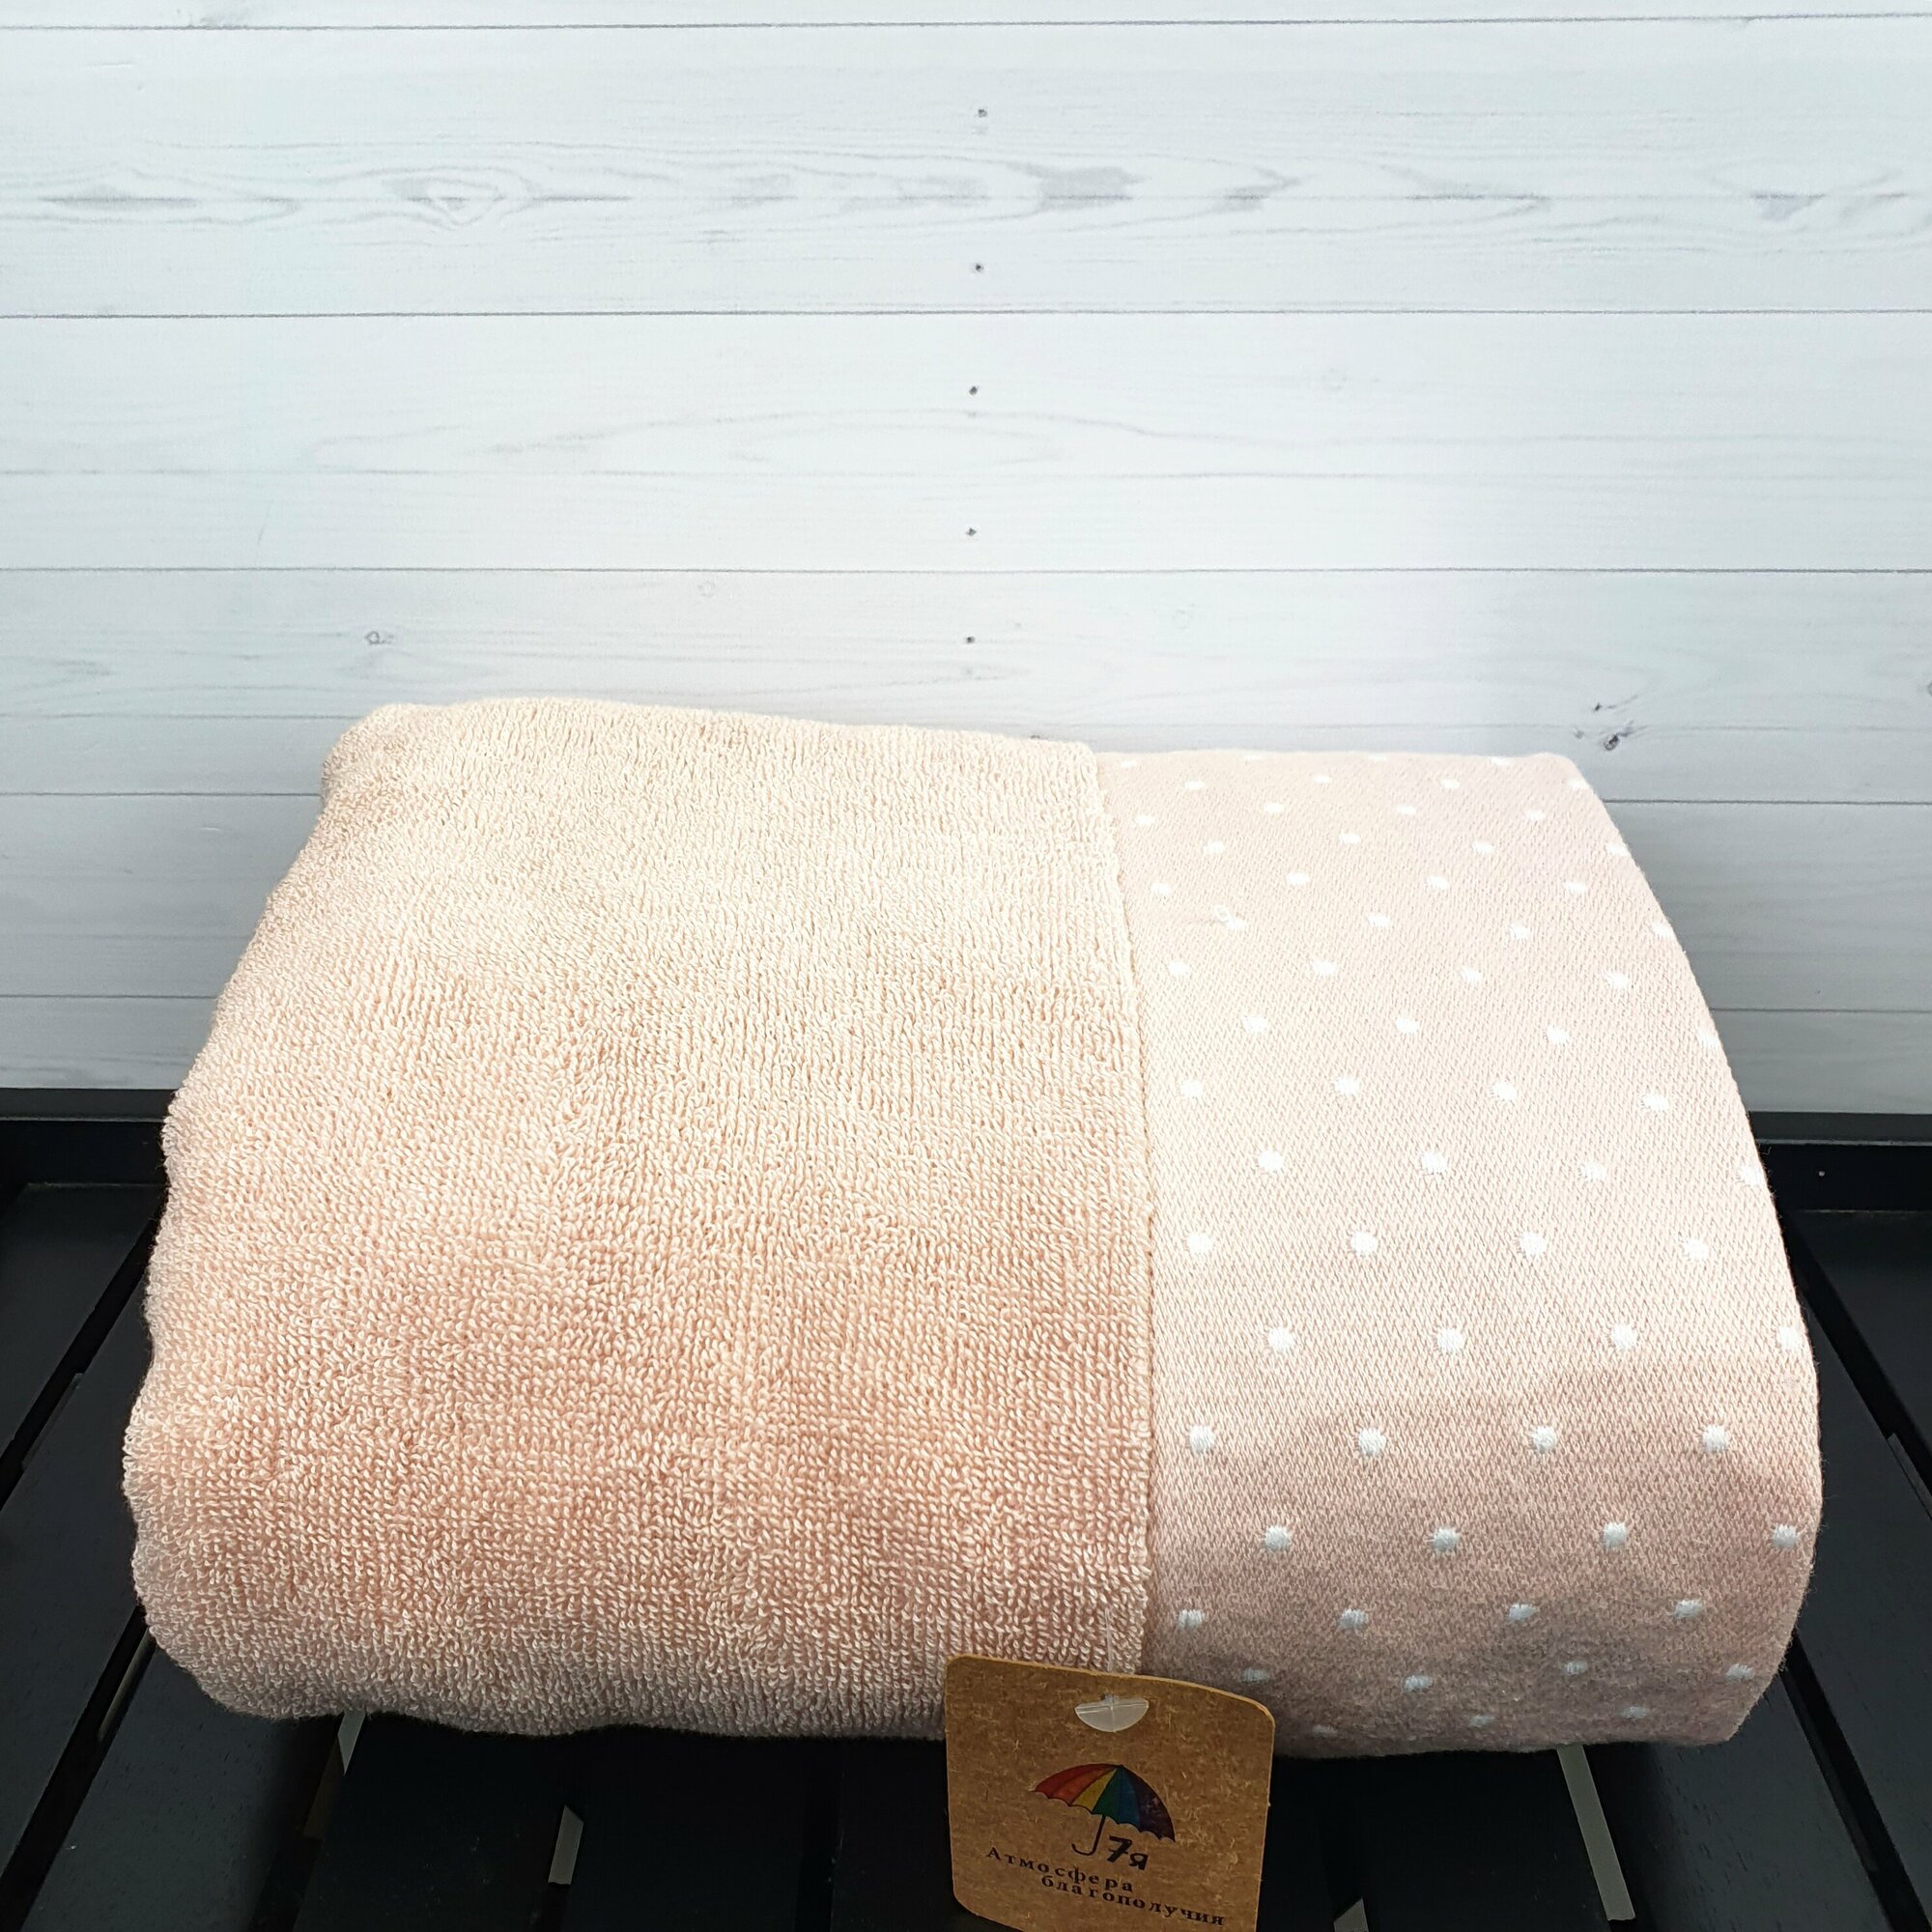 Полотенце банное для лица, рук махровое 50х90 см однотонное с бордюром в точечку, хлопок, 7Я текстиль, светло-розовый